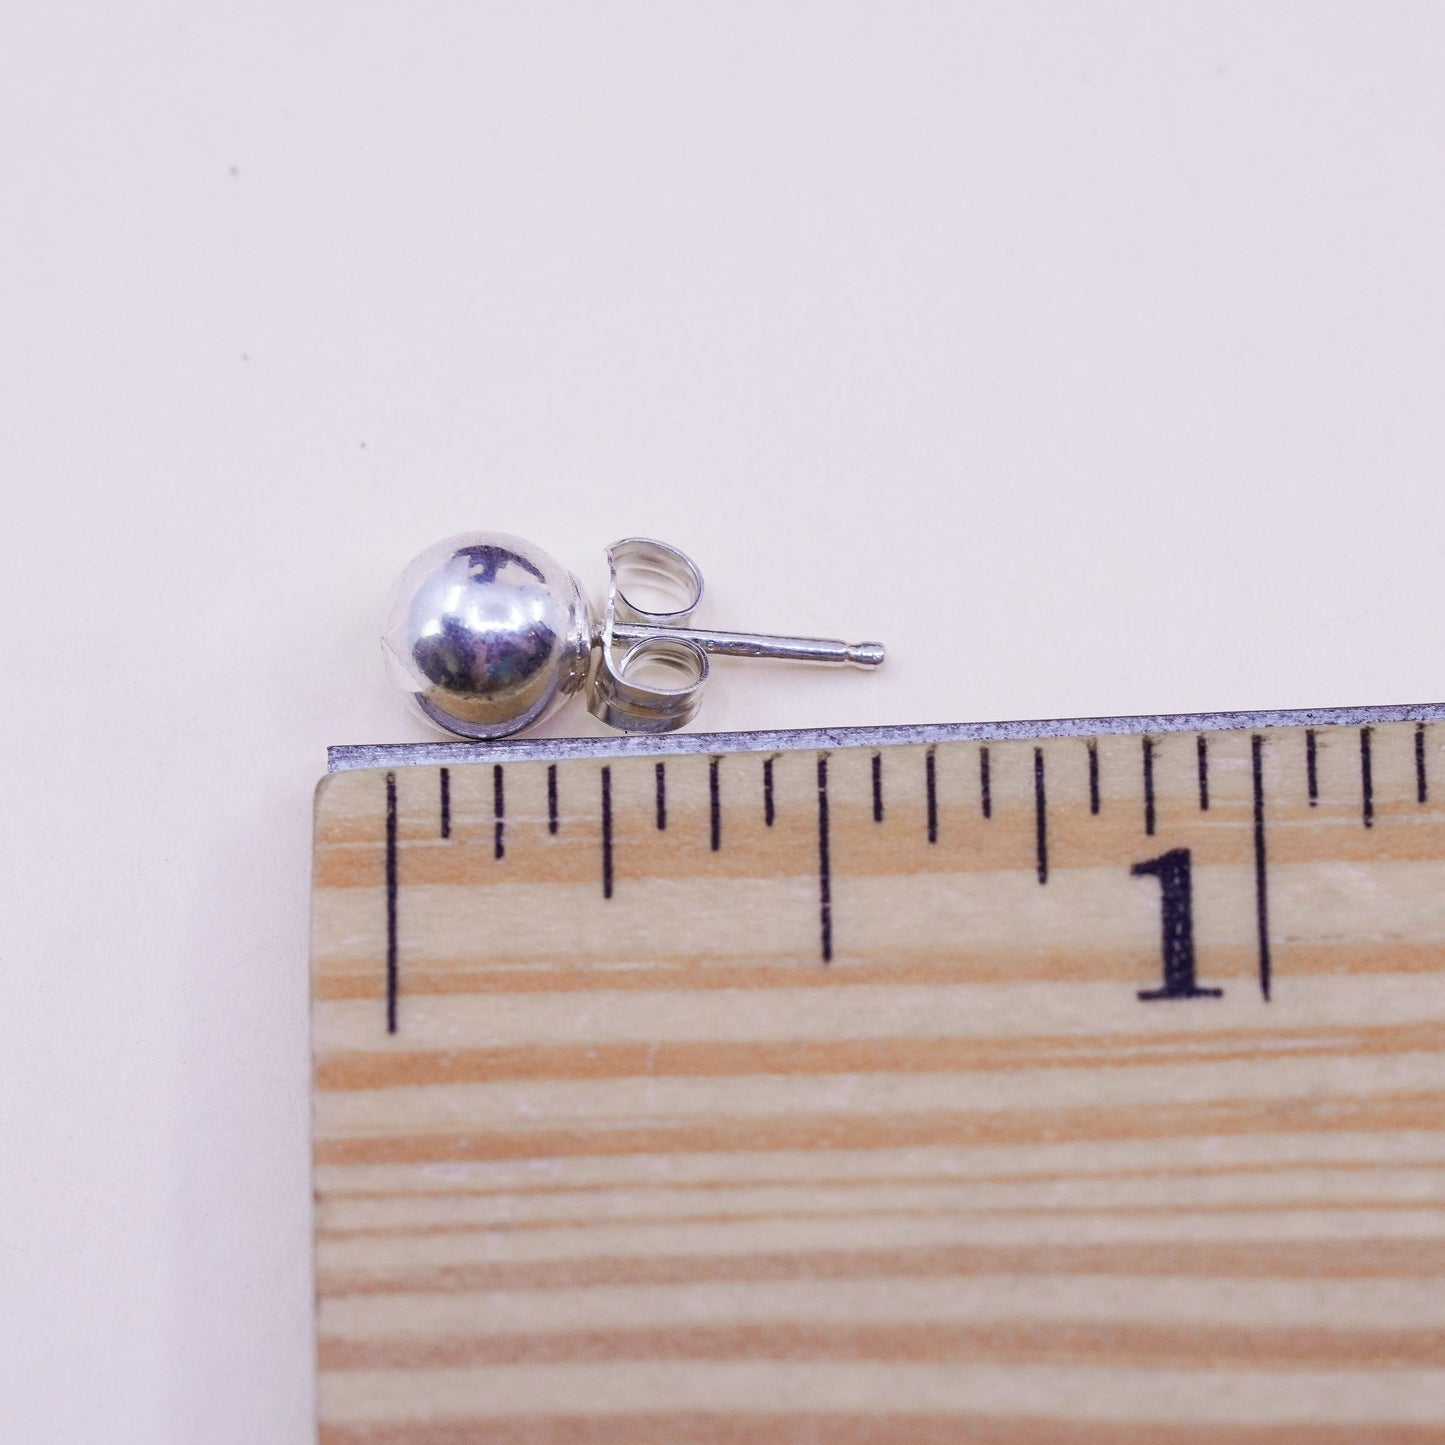 5mm, Vintage sterling silver sphere studs, handmade 925 earrings with star